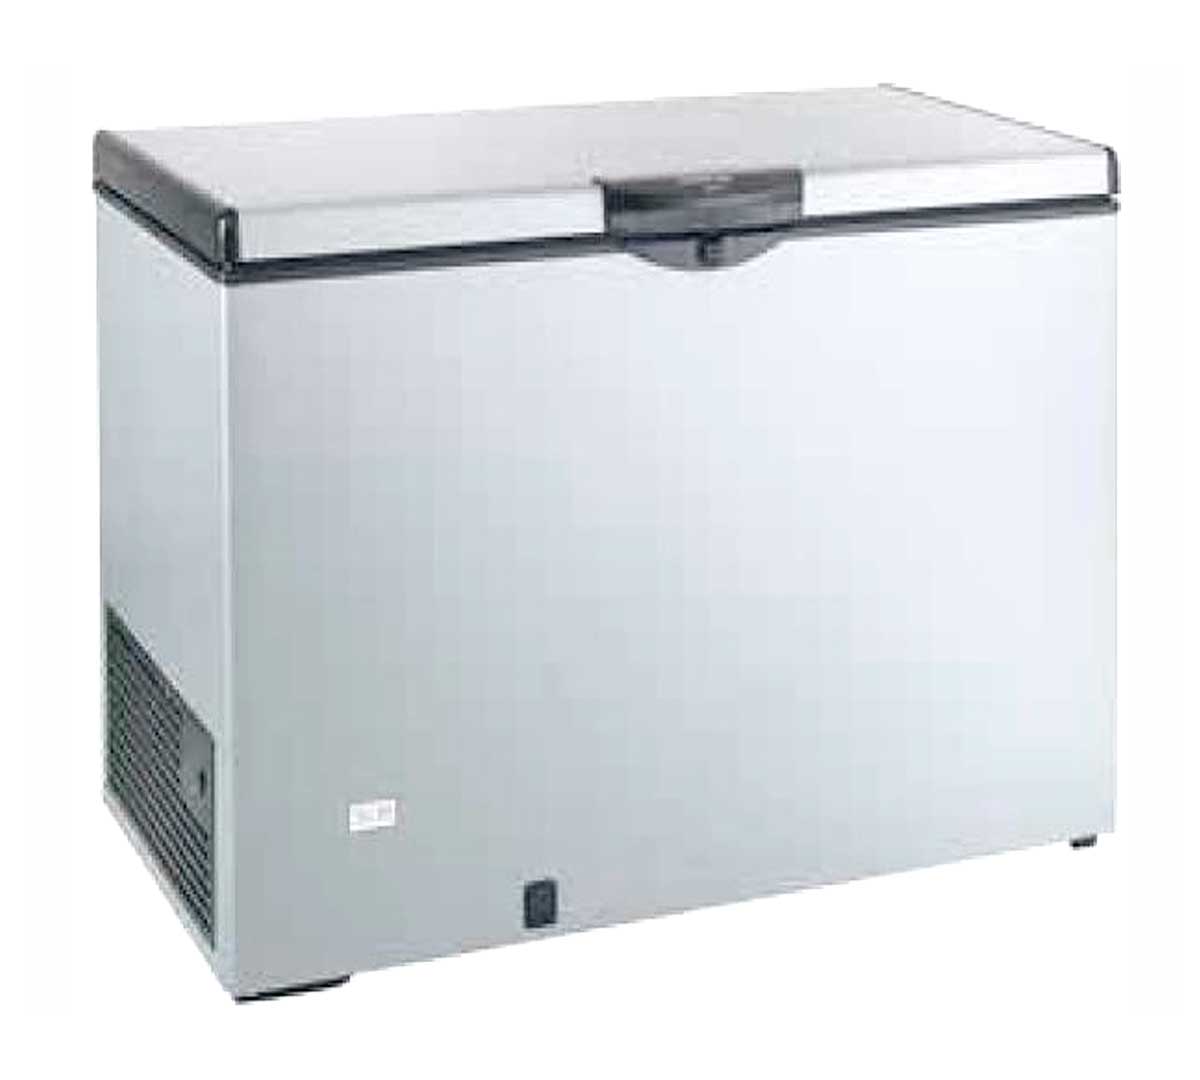 Arcón congelador de 2250 mm - Maquinaria para restaurantes